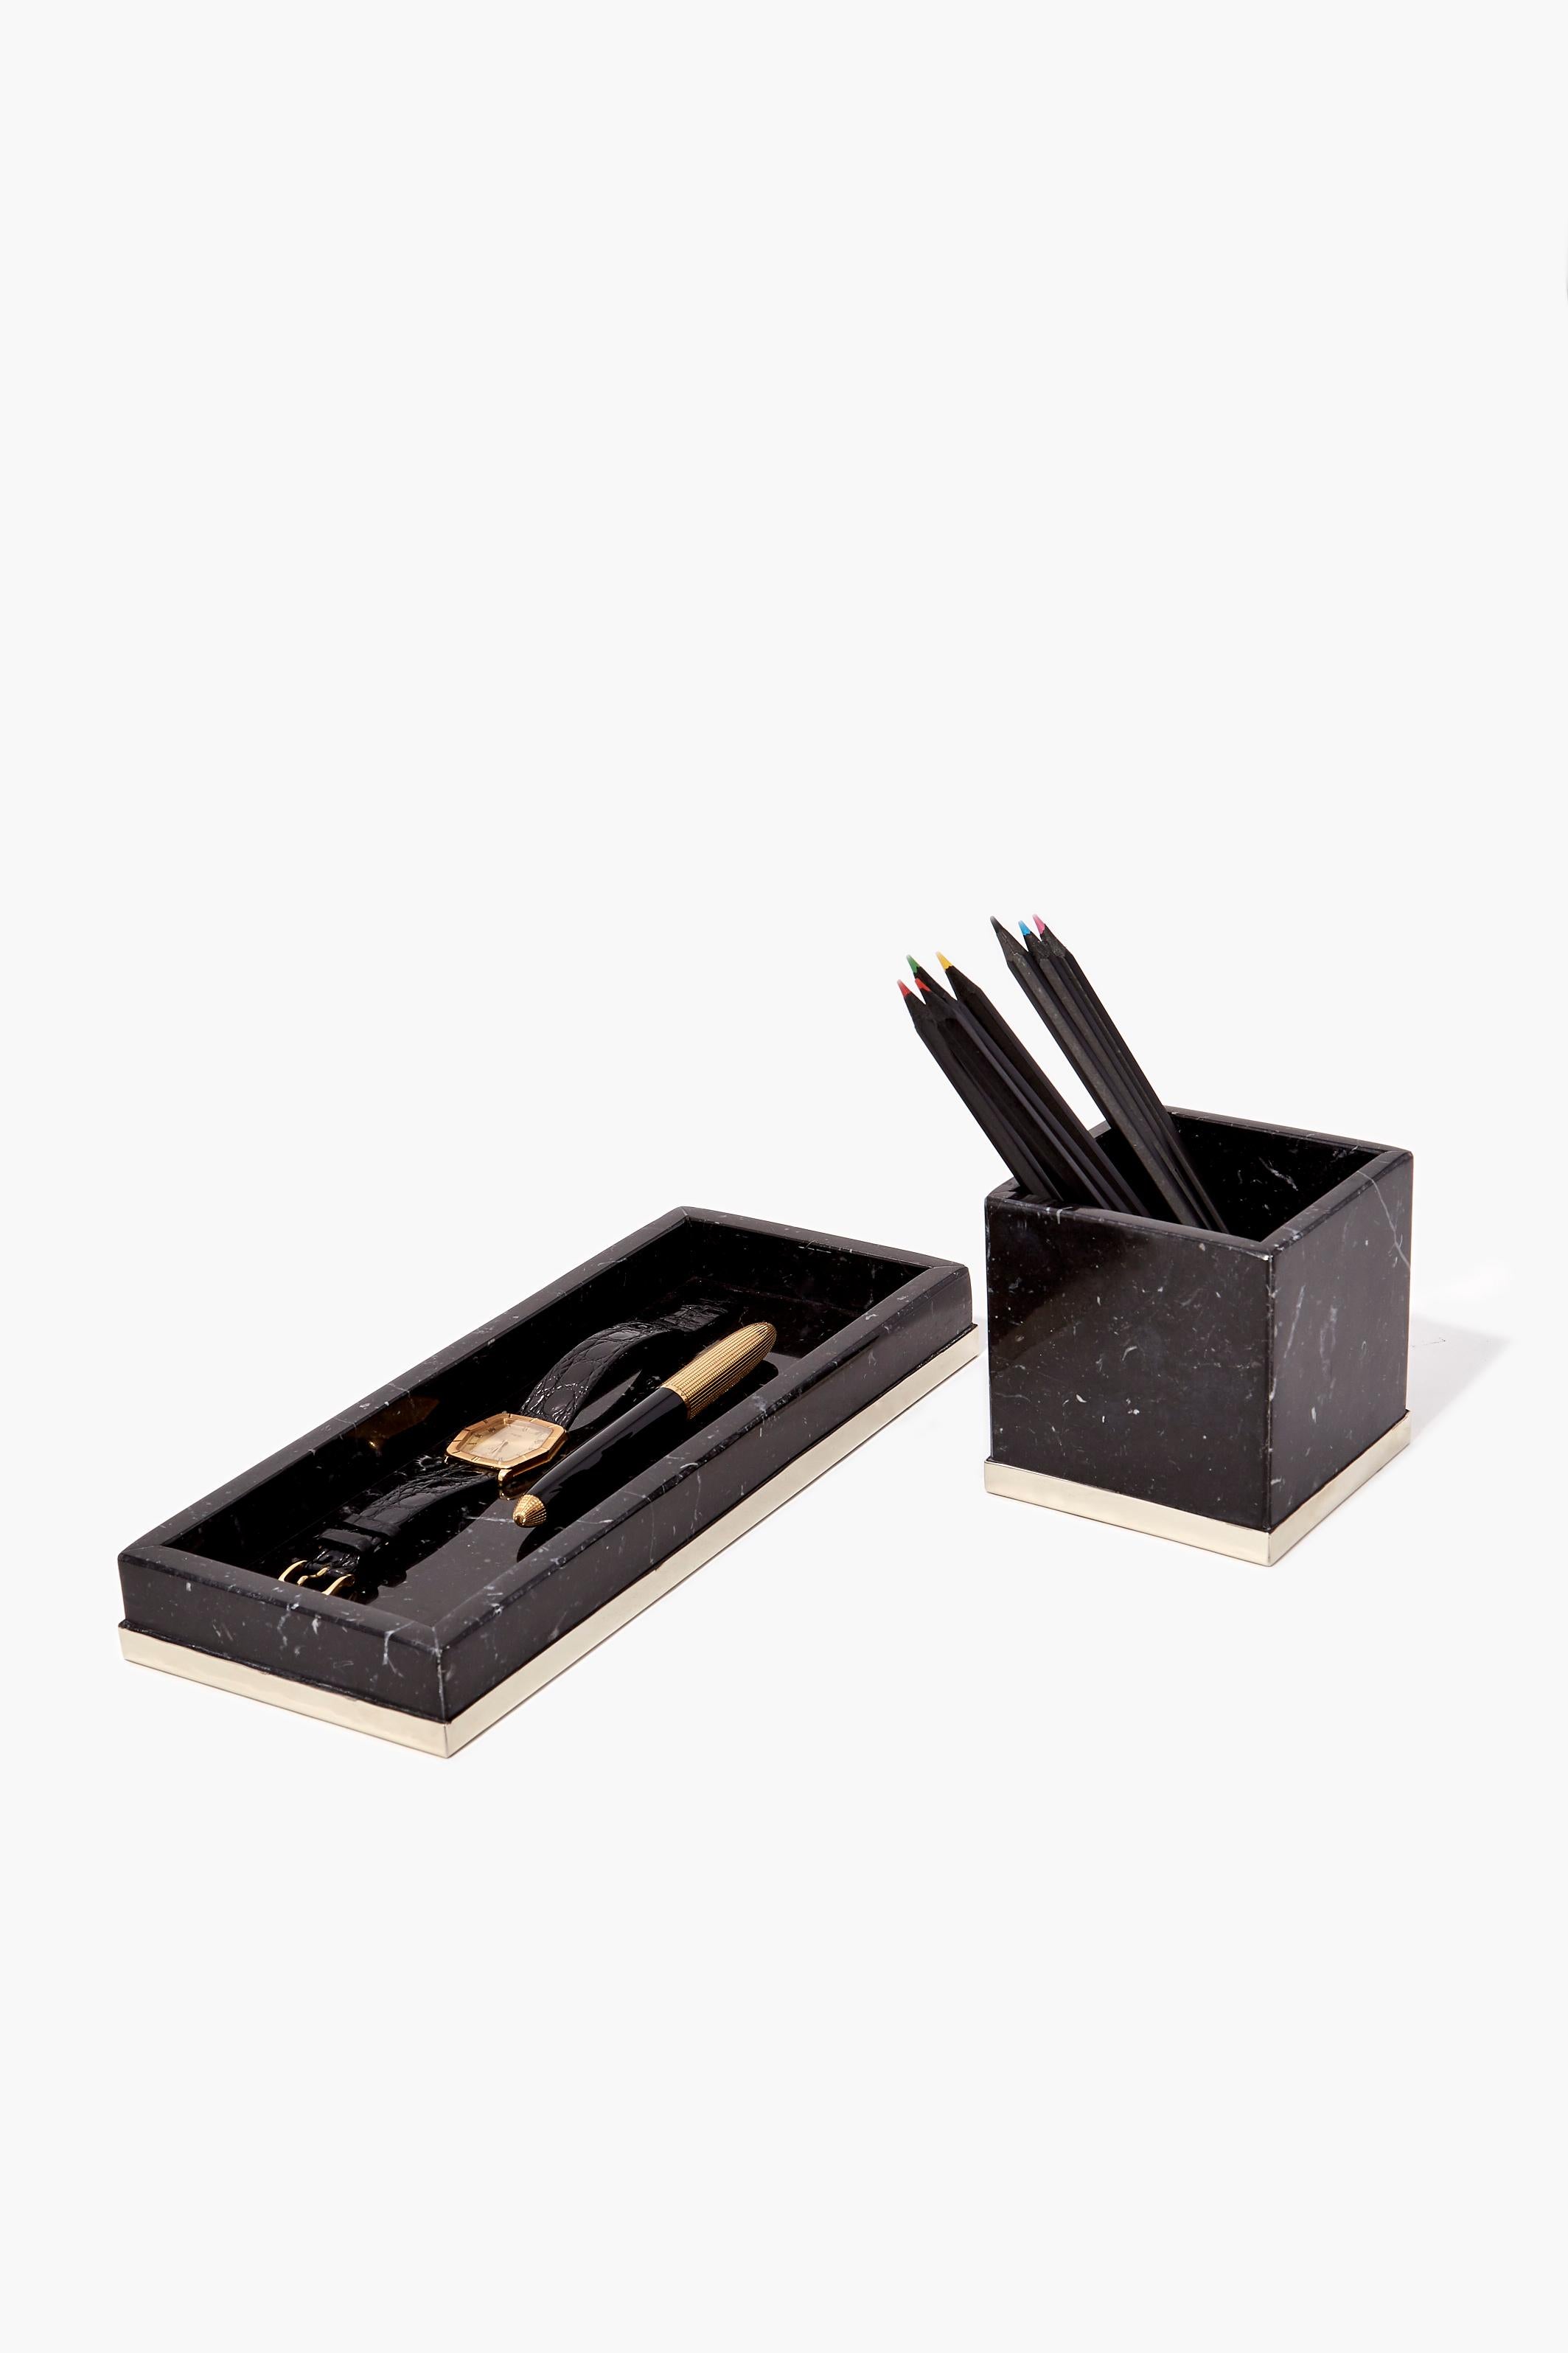 Polished TRAFUL Pencil Tray, Black Onyx & Alpaca Silver For Sale